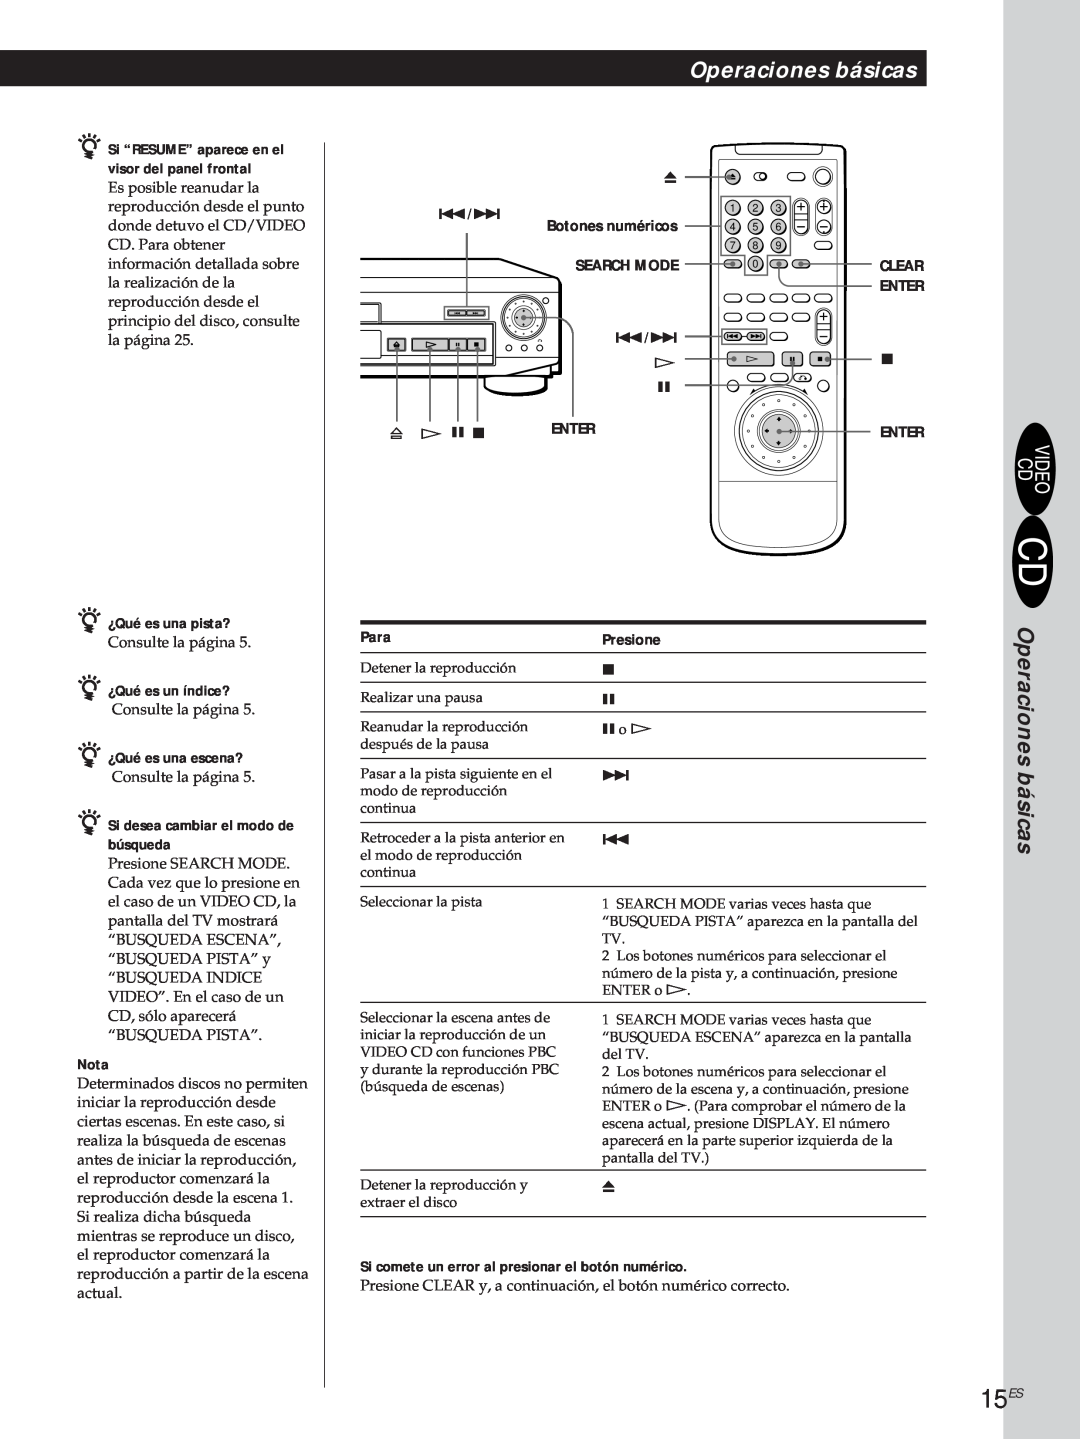 Sony DVP-S500D 15ES, Operaciones básicas, Para, Presione, z Si “RESUME” aparece en el, visor del panel frontal, Enter 